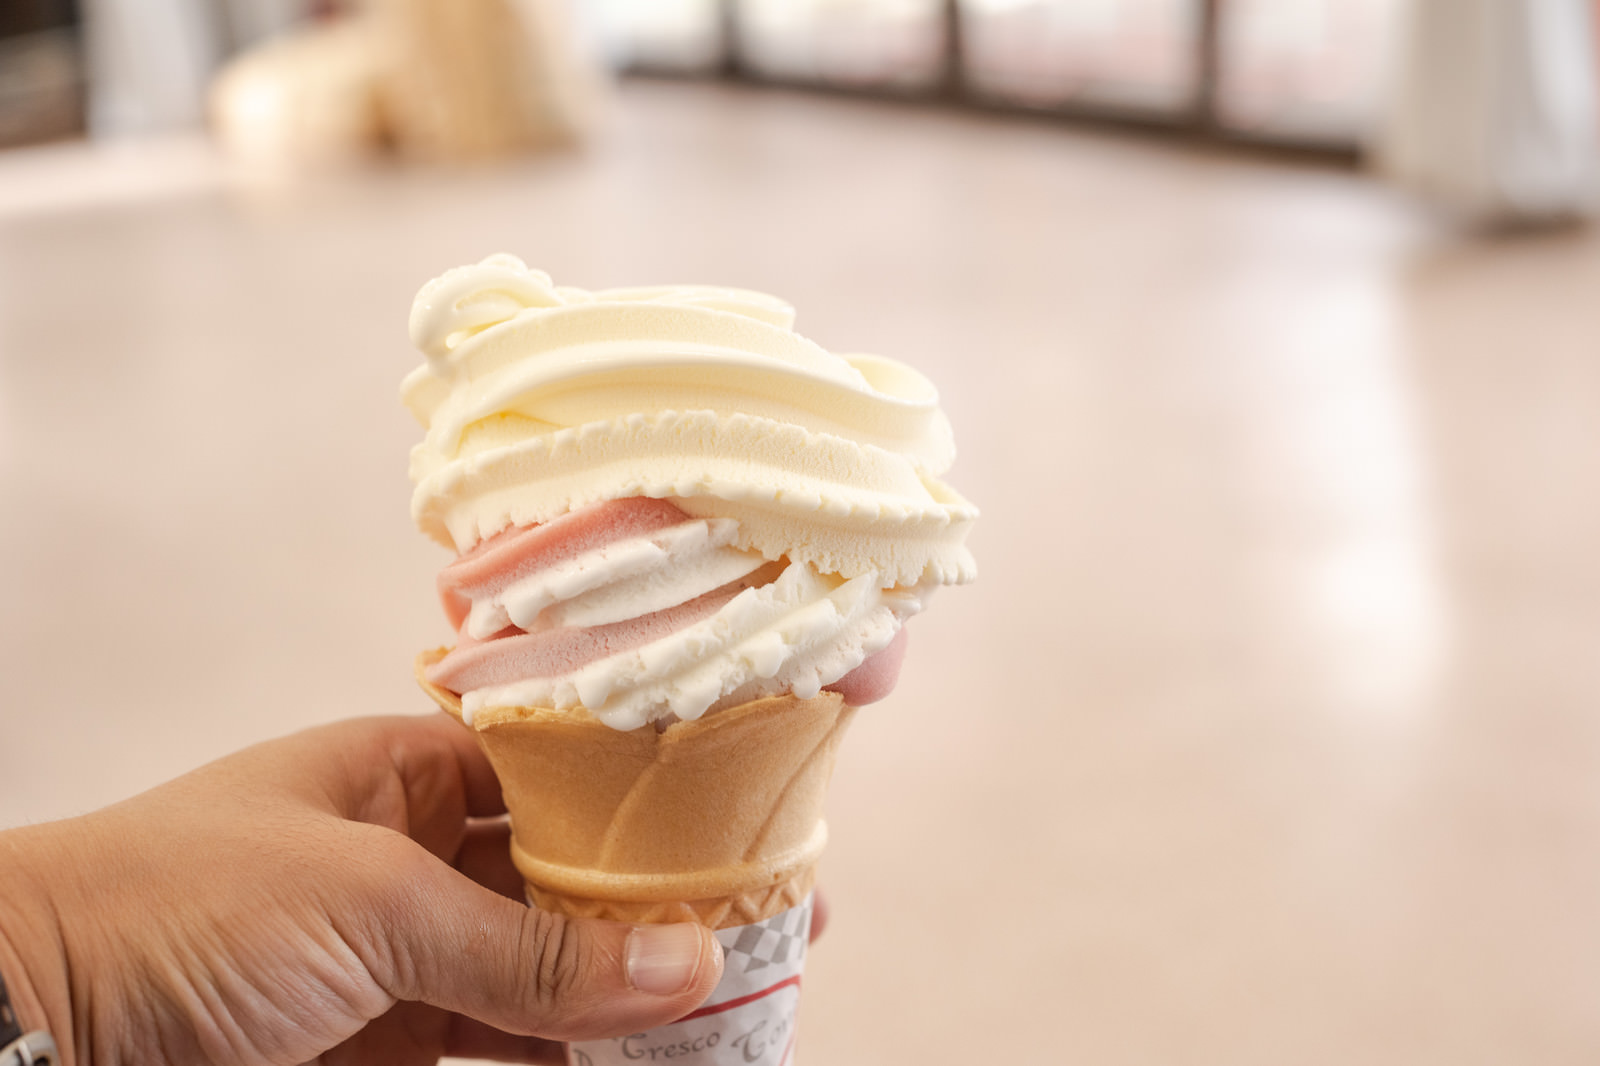 武石観光センターで購入したソフトクリームの写真 画像 フリー素材 ぱくたそ